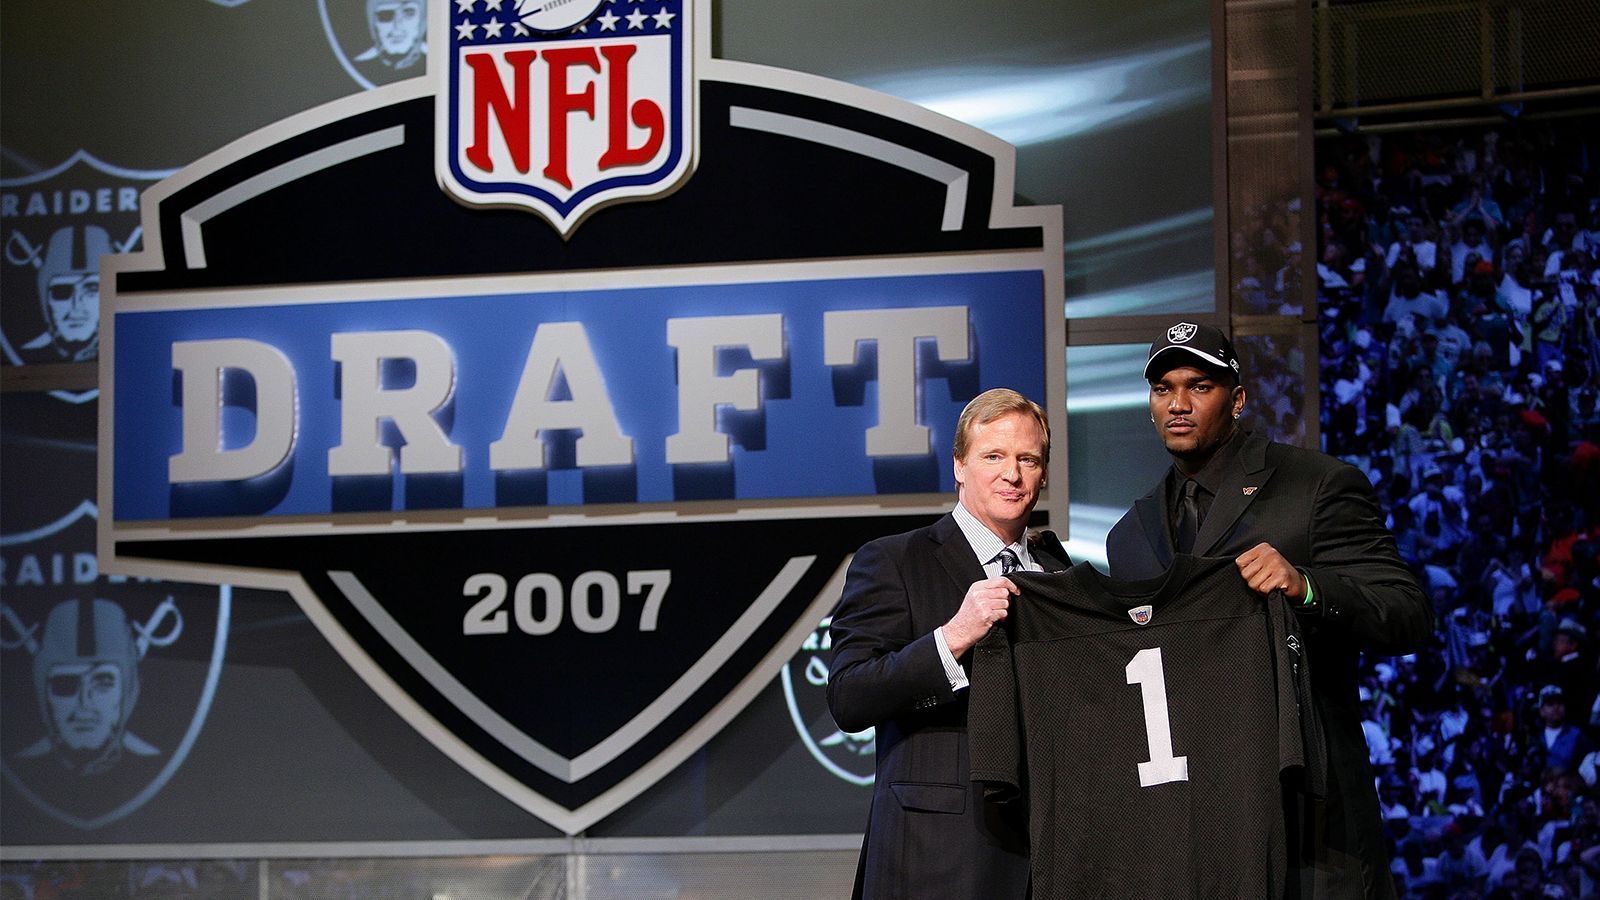 
                <strong>NFL Draft 2007: JaMarcus Russell</strong><br>
                JaMarcus Russell ist der Nummer-1-Pick als Quarterback der Oakland Raiders. Wegen Gewichts- und Drogenproblemen absolviert er allerdings nur 31 Spiele in der NFL und beendet 2009 seine Karriere. Zu den Raiders kommt er als Absolvent der Louisiana State University.
              